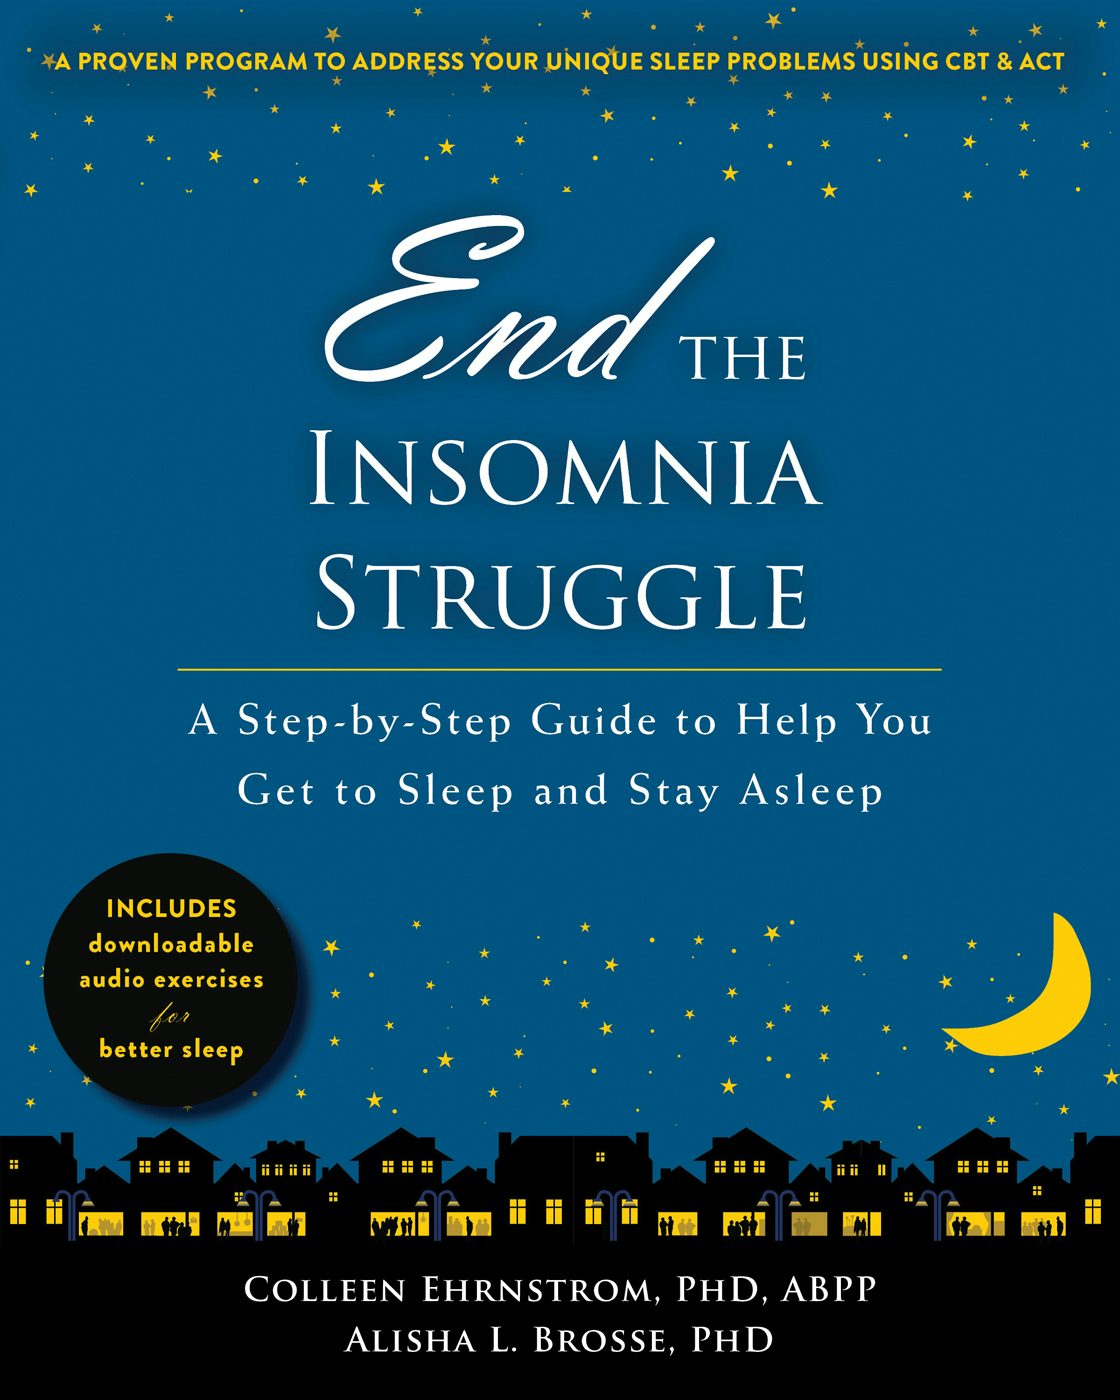 i struggle from insomnia help